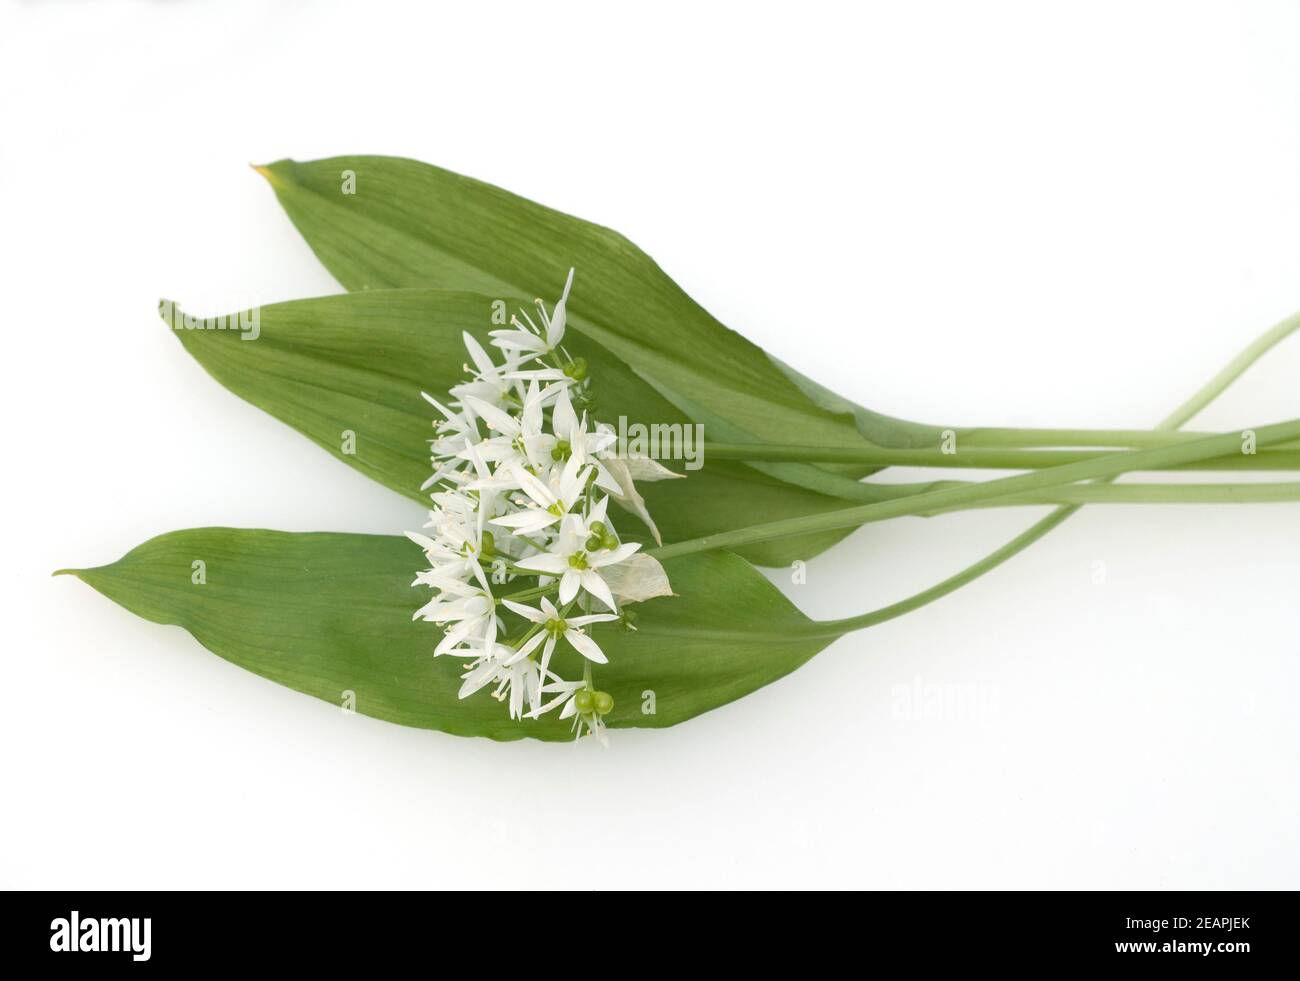 Baerlauch, Allium ursinum, Stock Photo